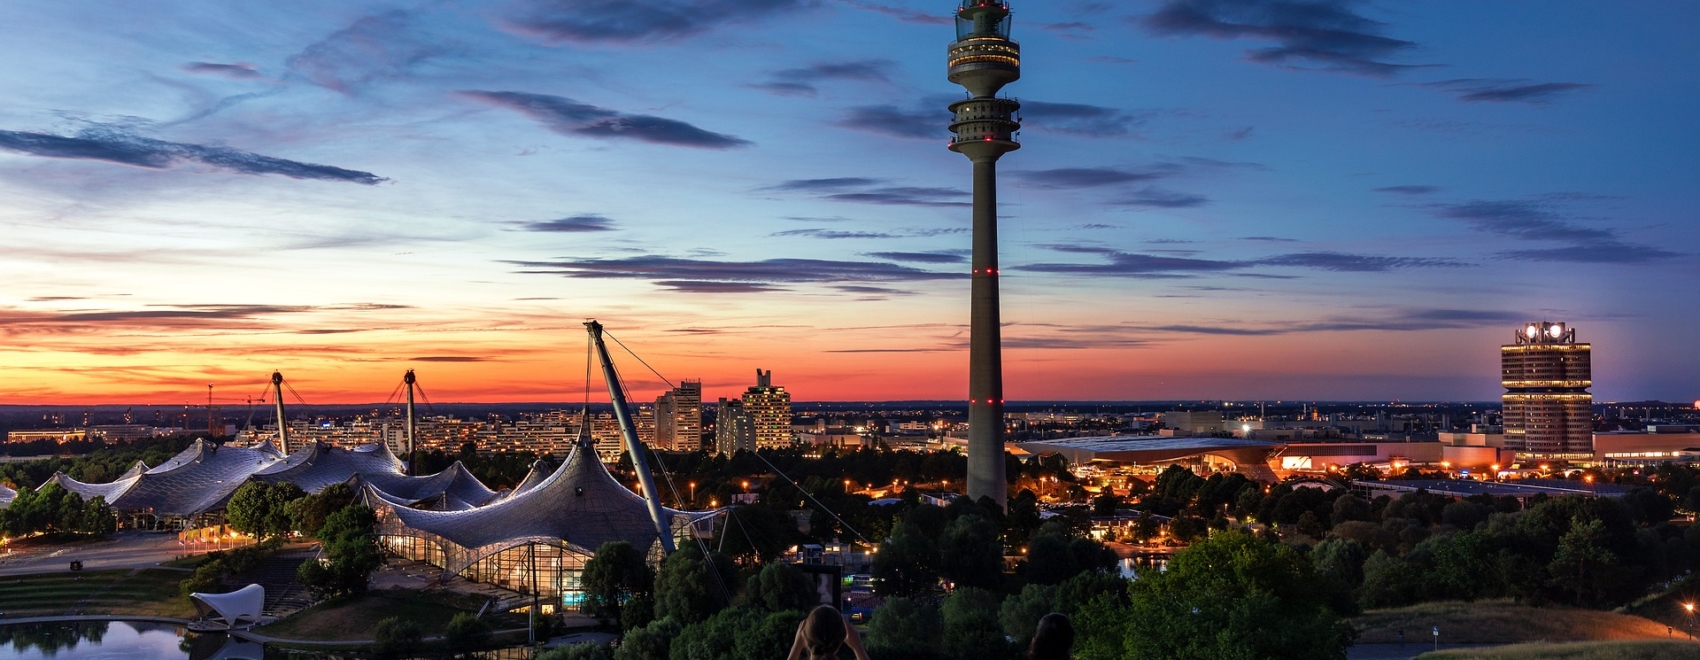 Olympiastadion bei Sonnenuntergang beim Filmfest München